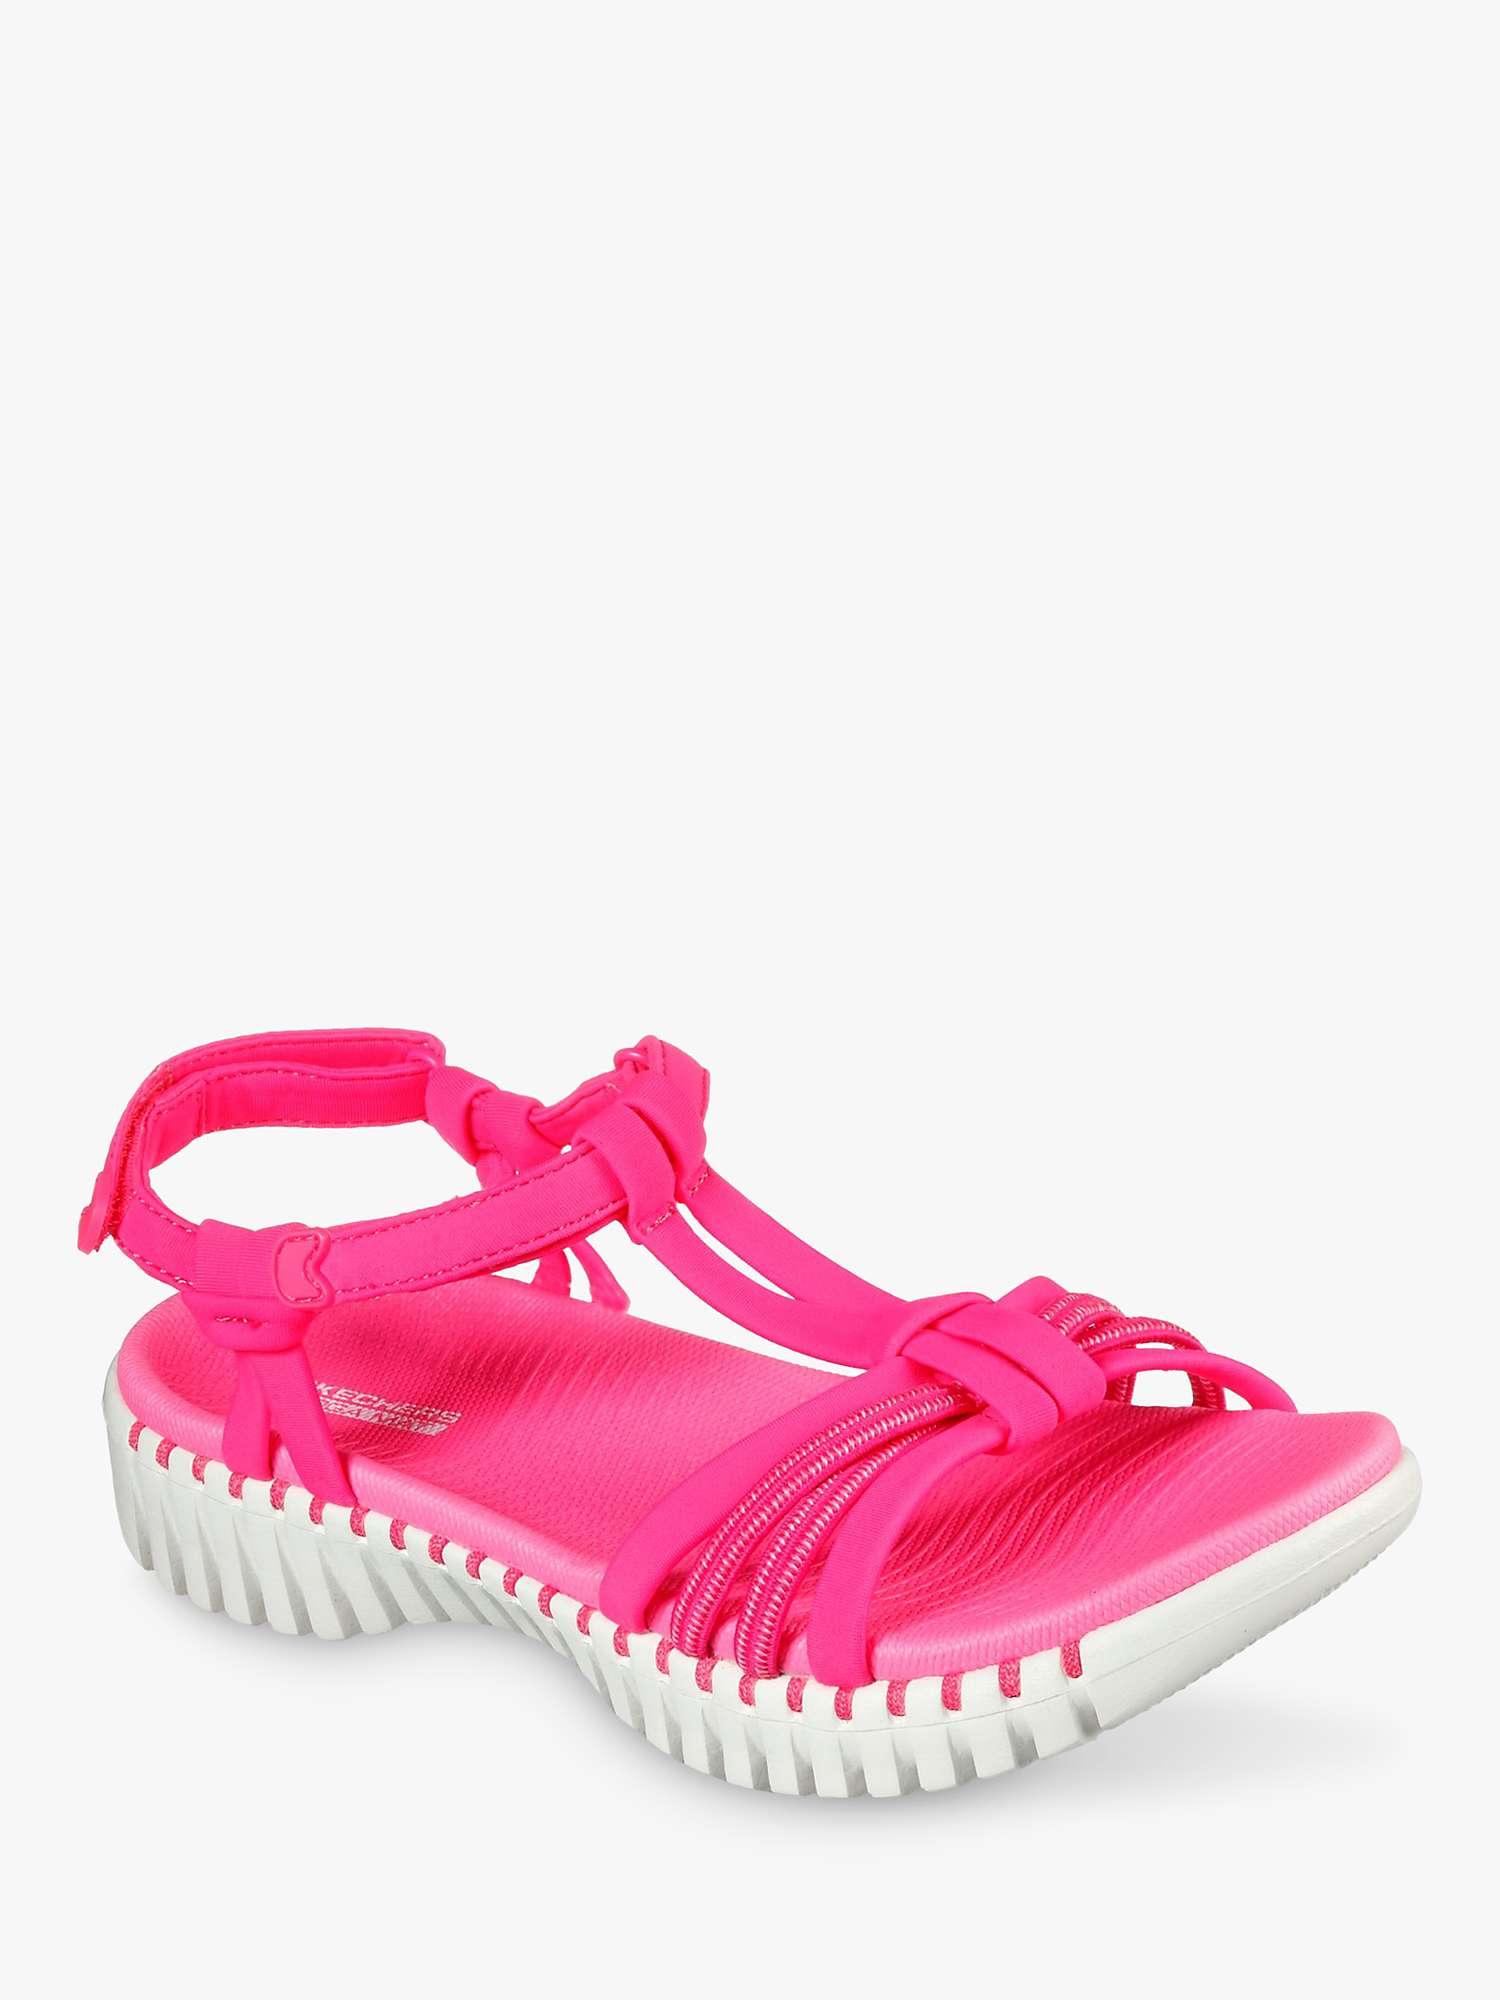 Buy Skechers Go Walk Smart Good Looking Summer Sandals Online at johnlewis.com